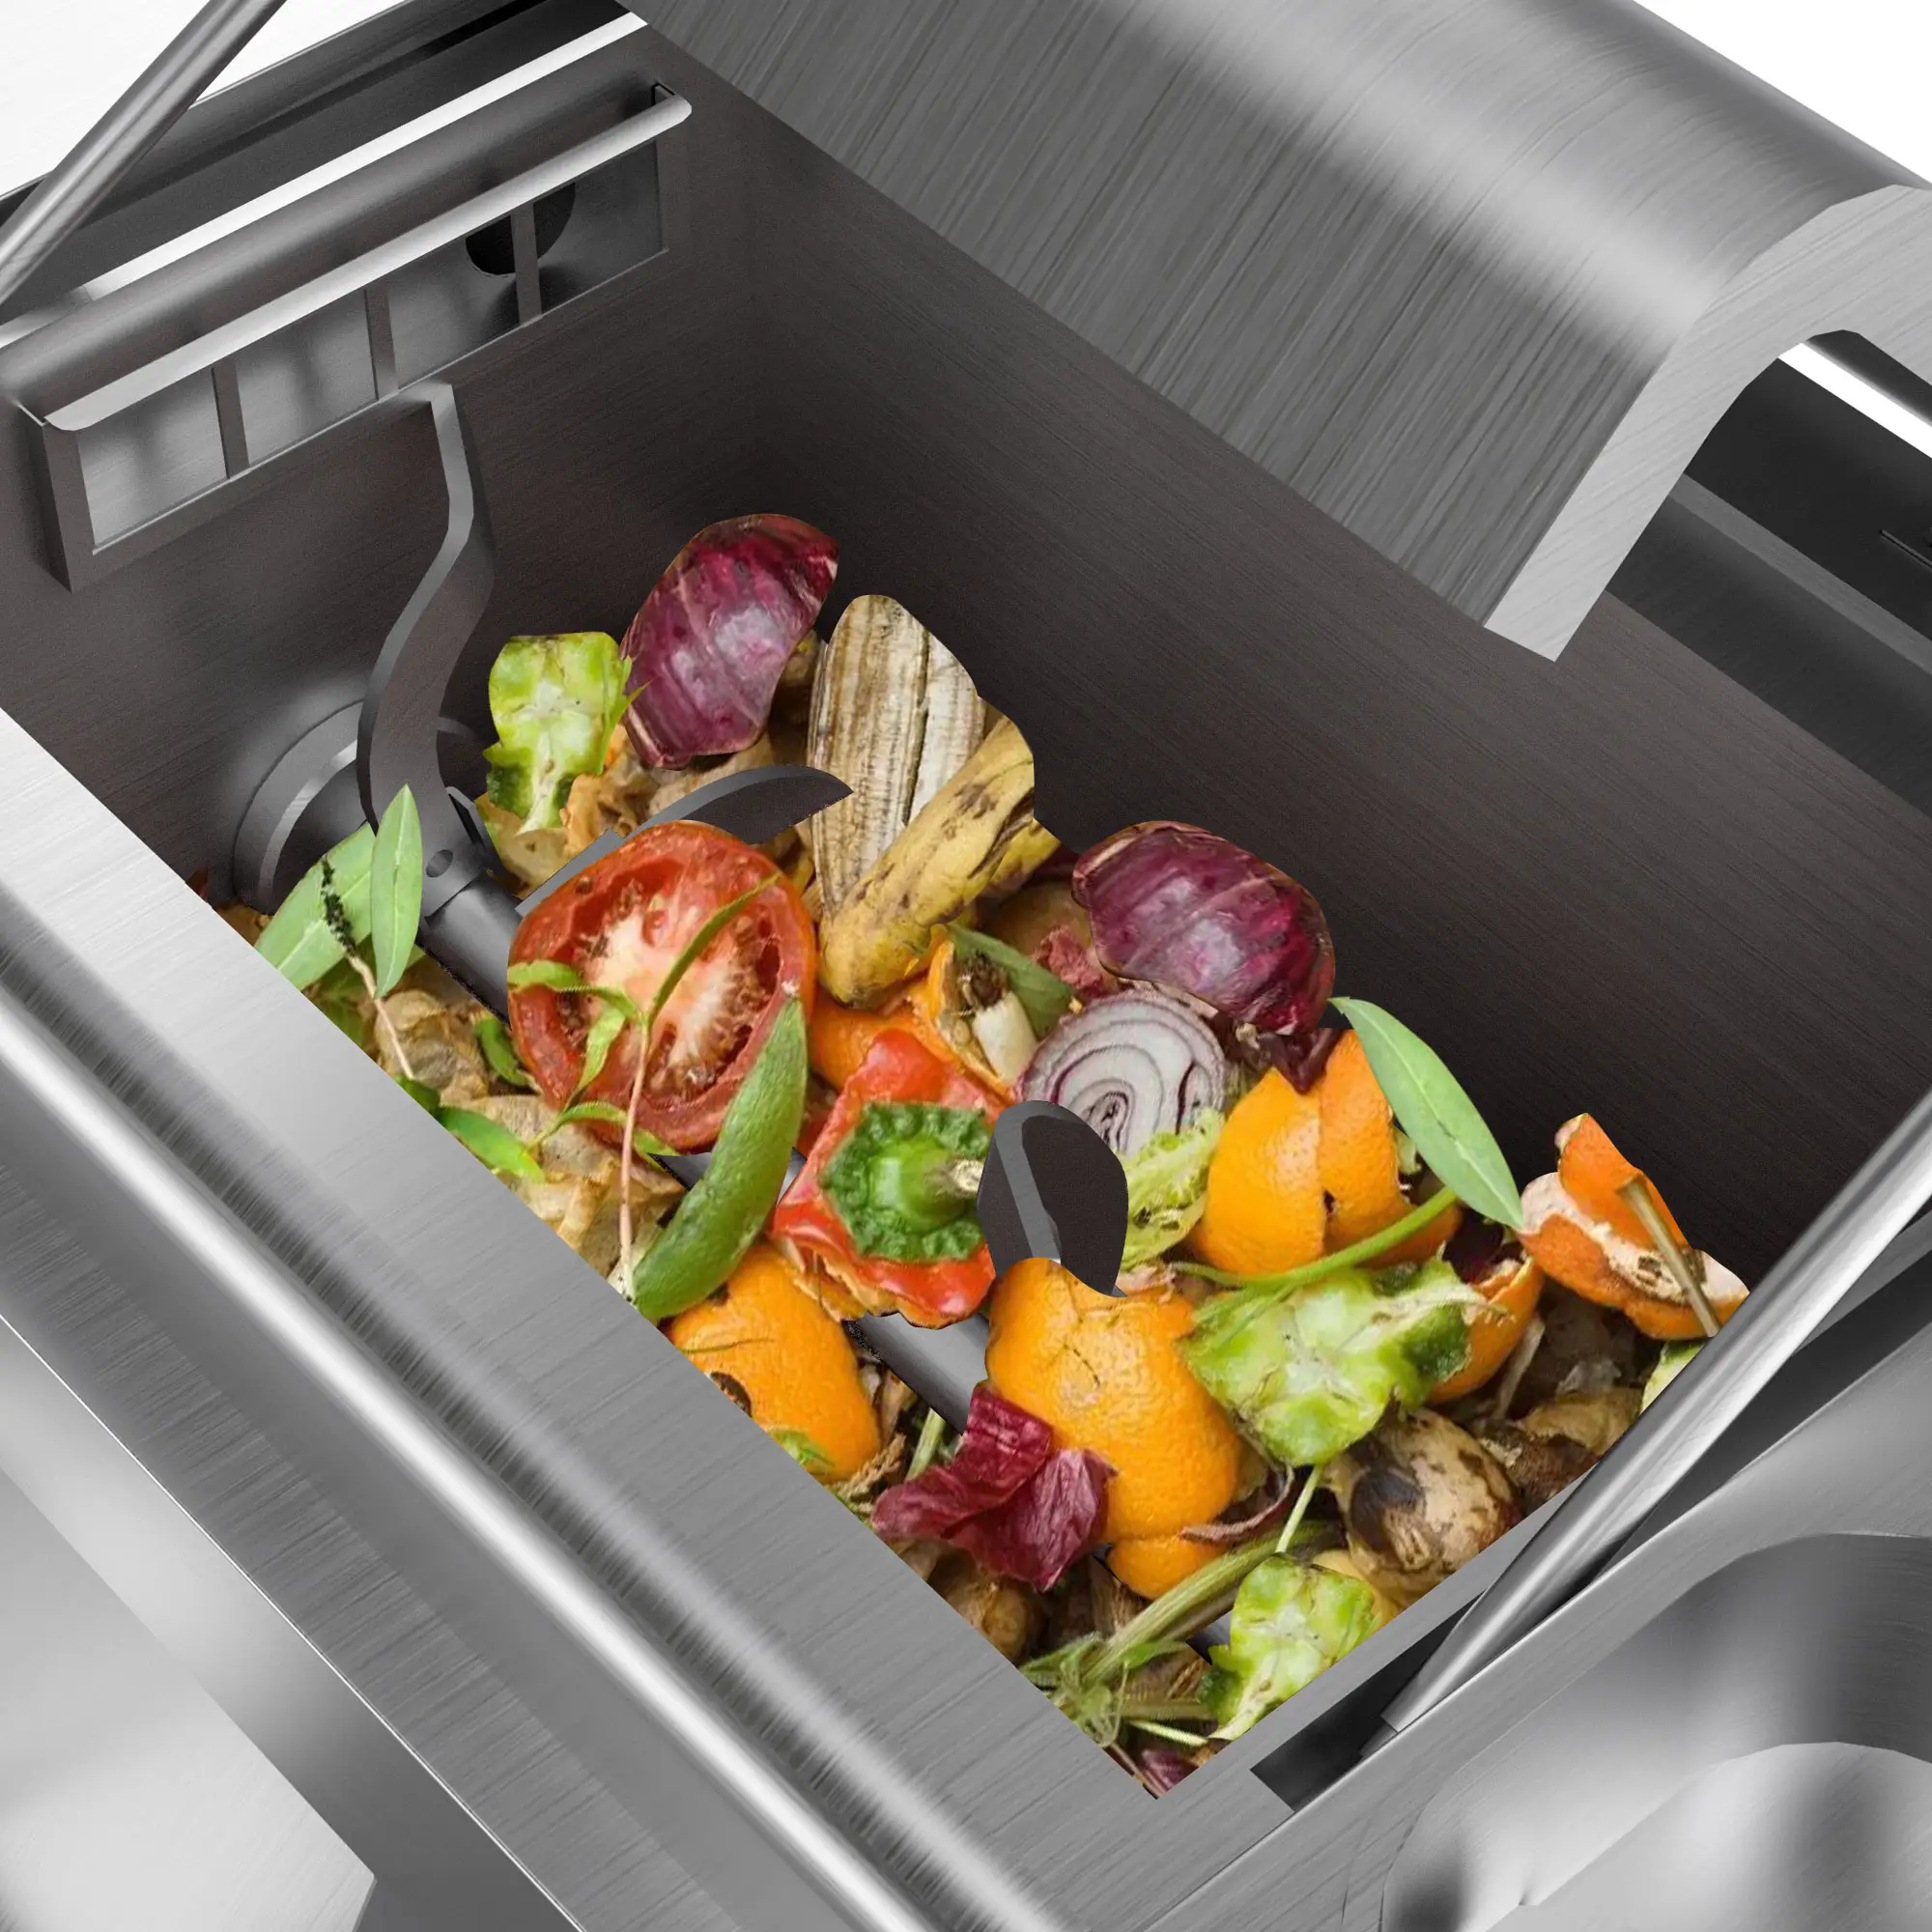 Sunefun 50kg broyeur de déchets alimentaires gallet dispos de déchets poubelle recycler compost combo décomposer efficacement les déchets alimentaires